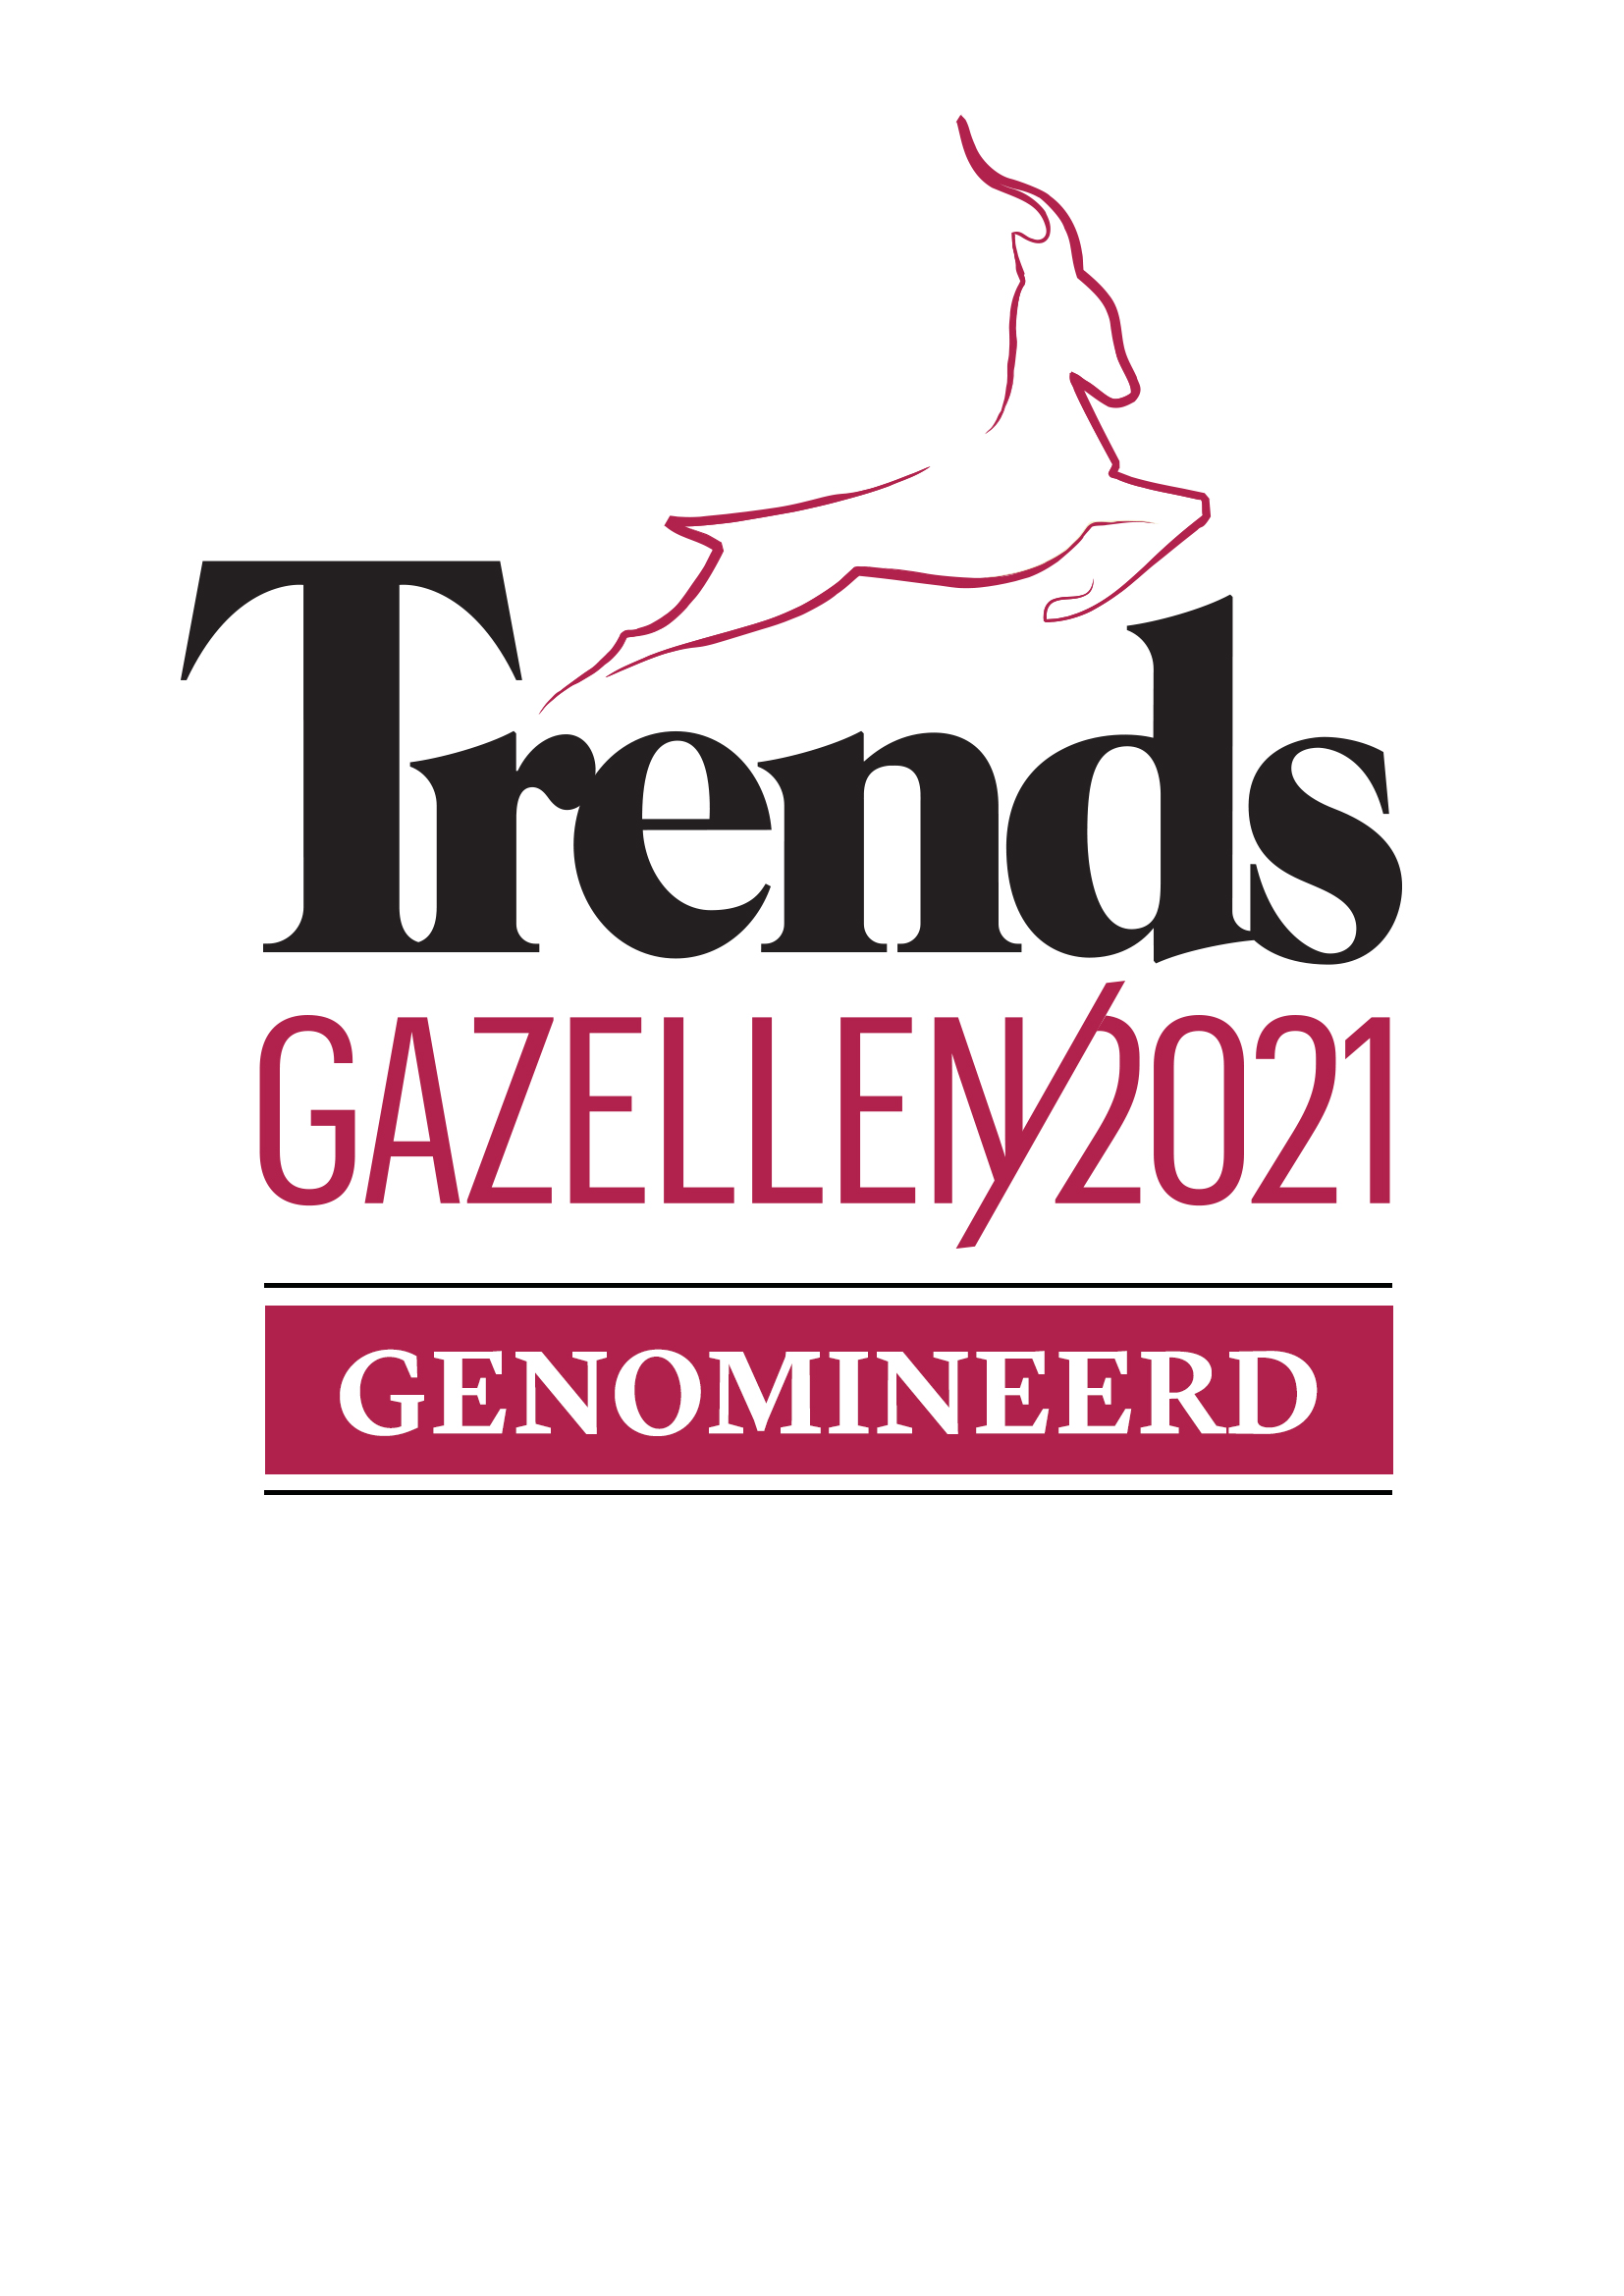 Landmeterskantoor Van Eester Trends Gazellen 2021